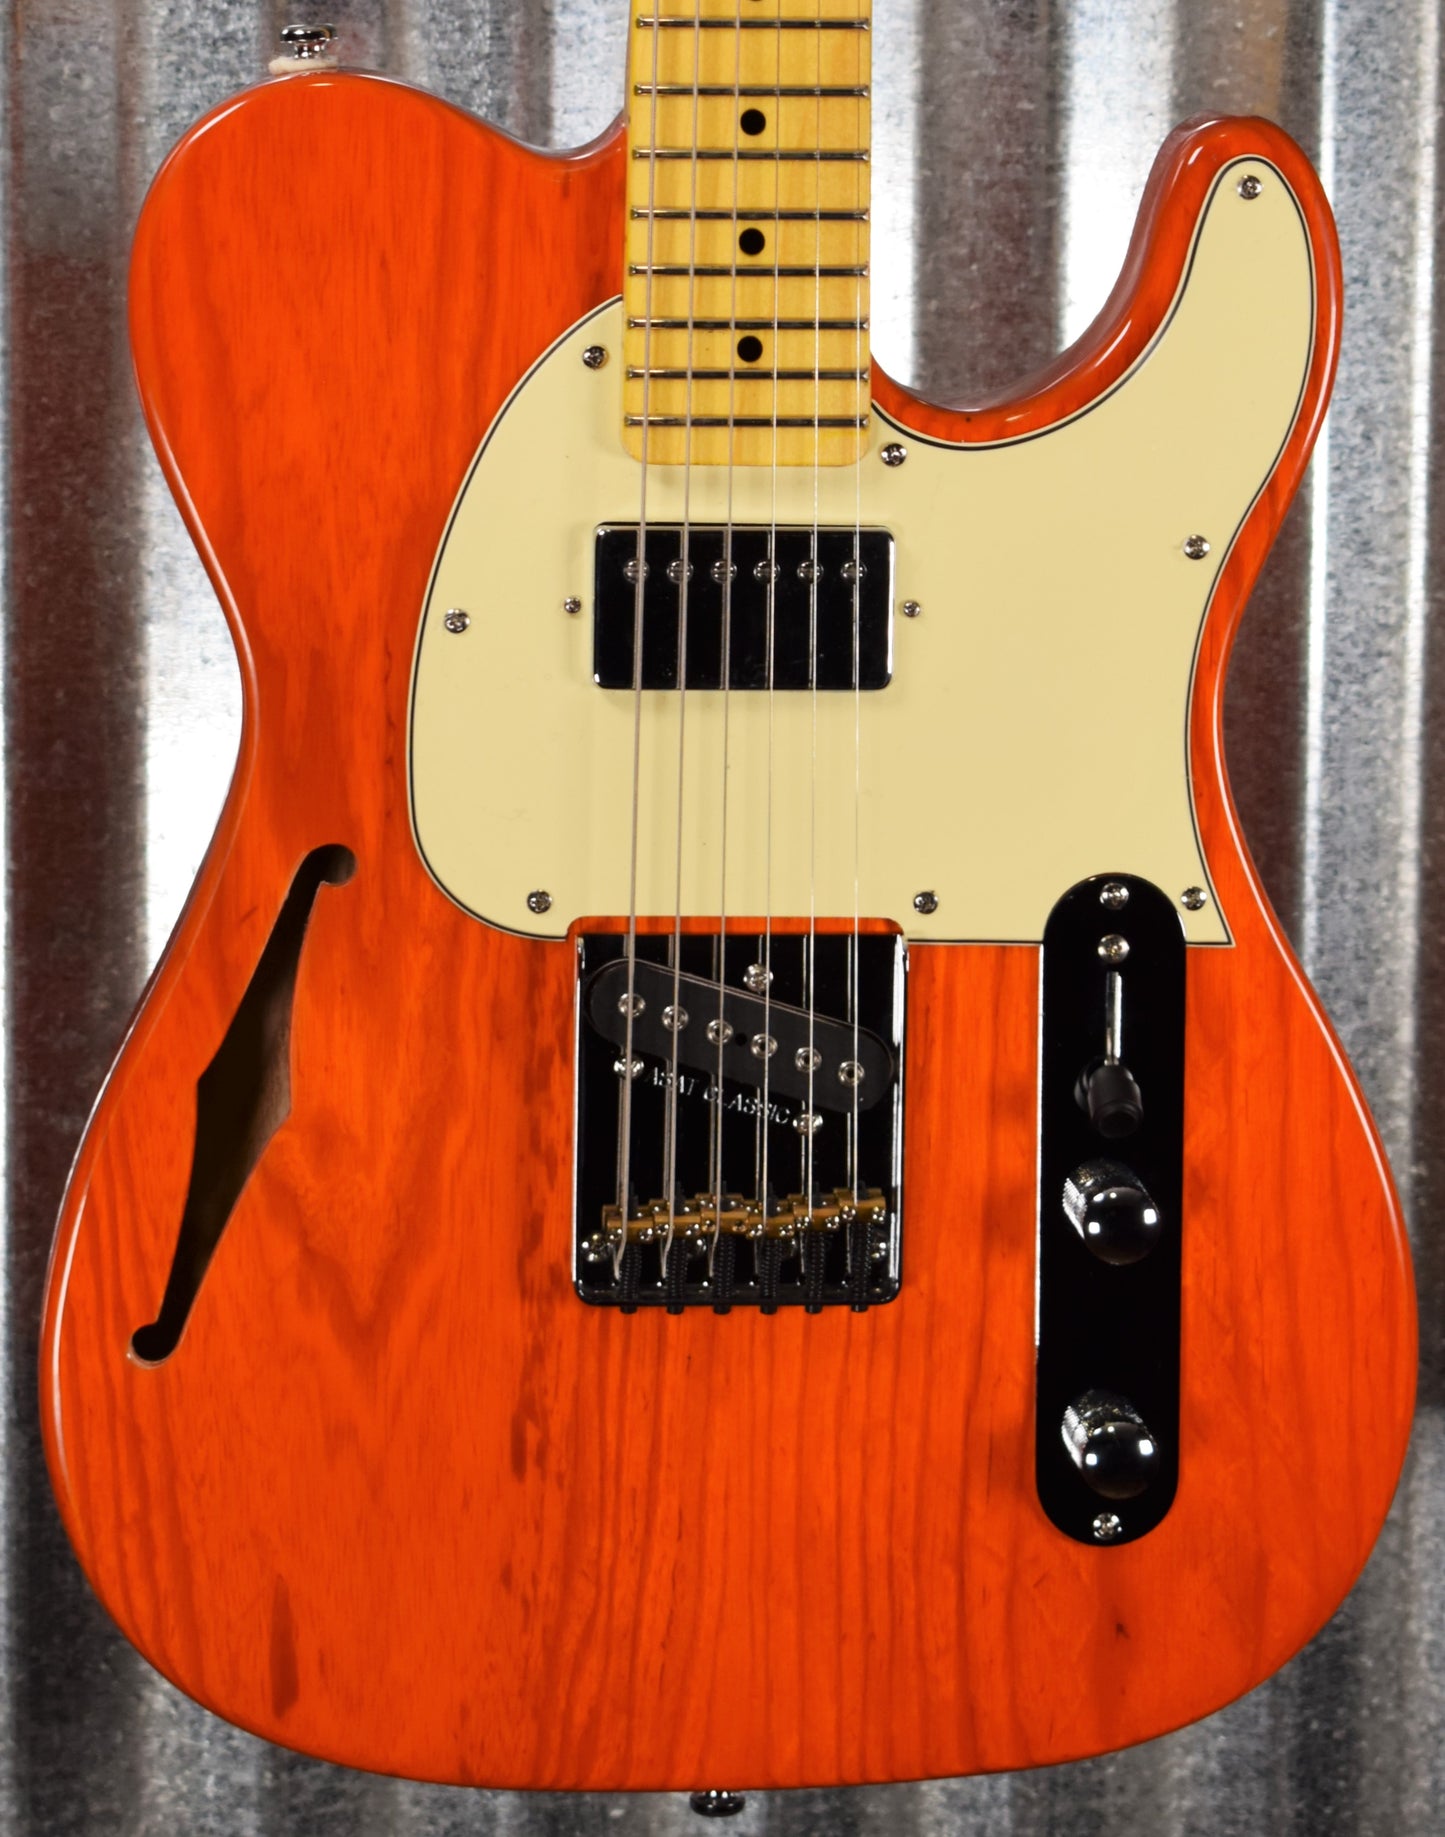 G&L Tribute ASAT Classic Bluesboy Semi Hollow Clear Orange Guitar #5773 Demo